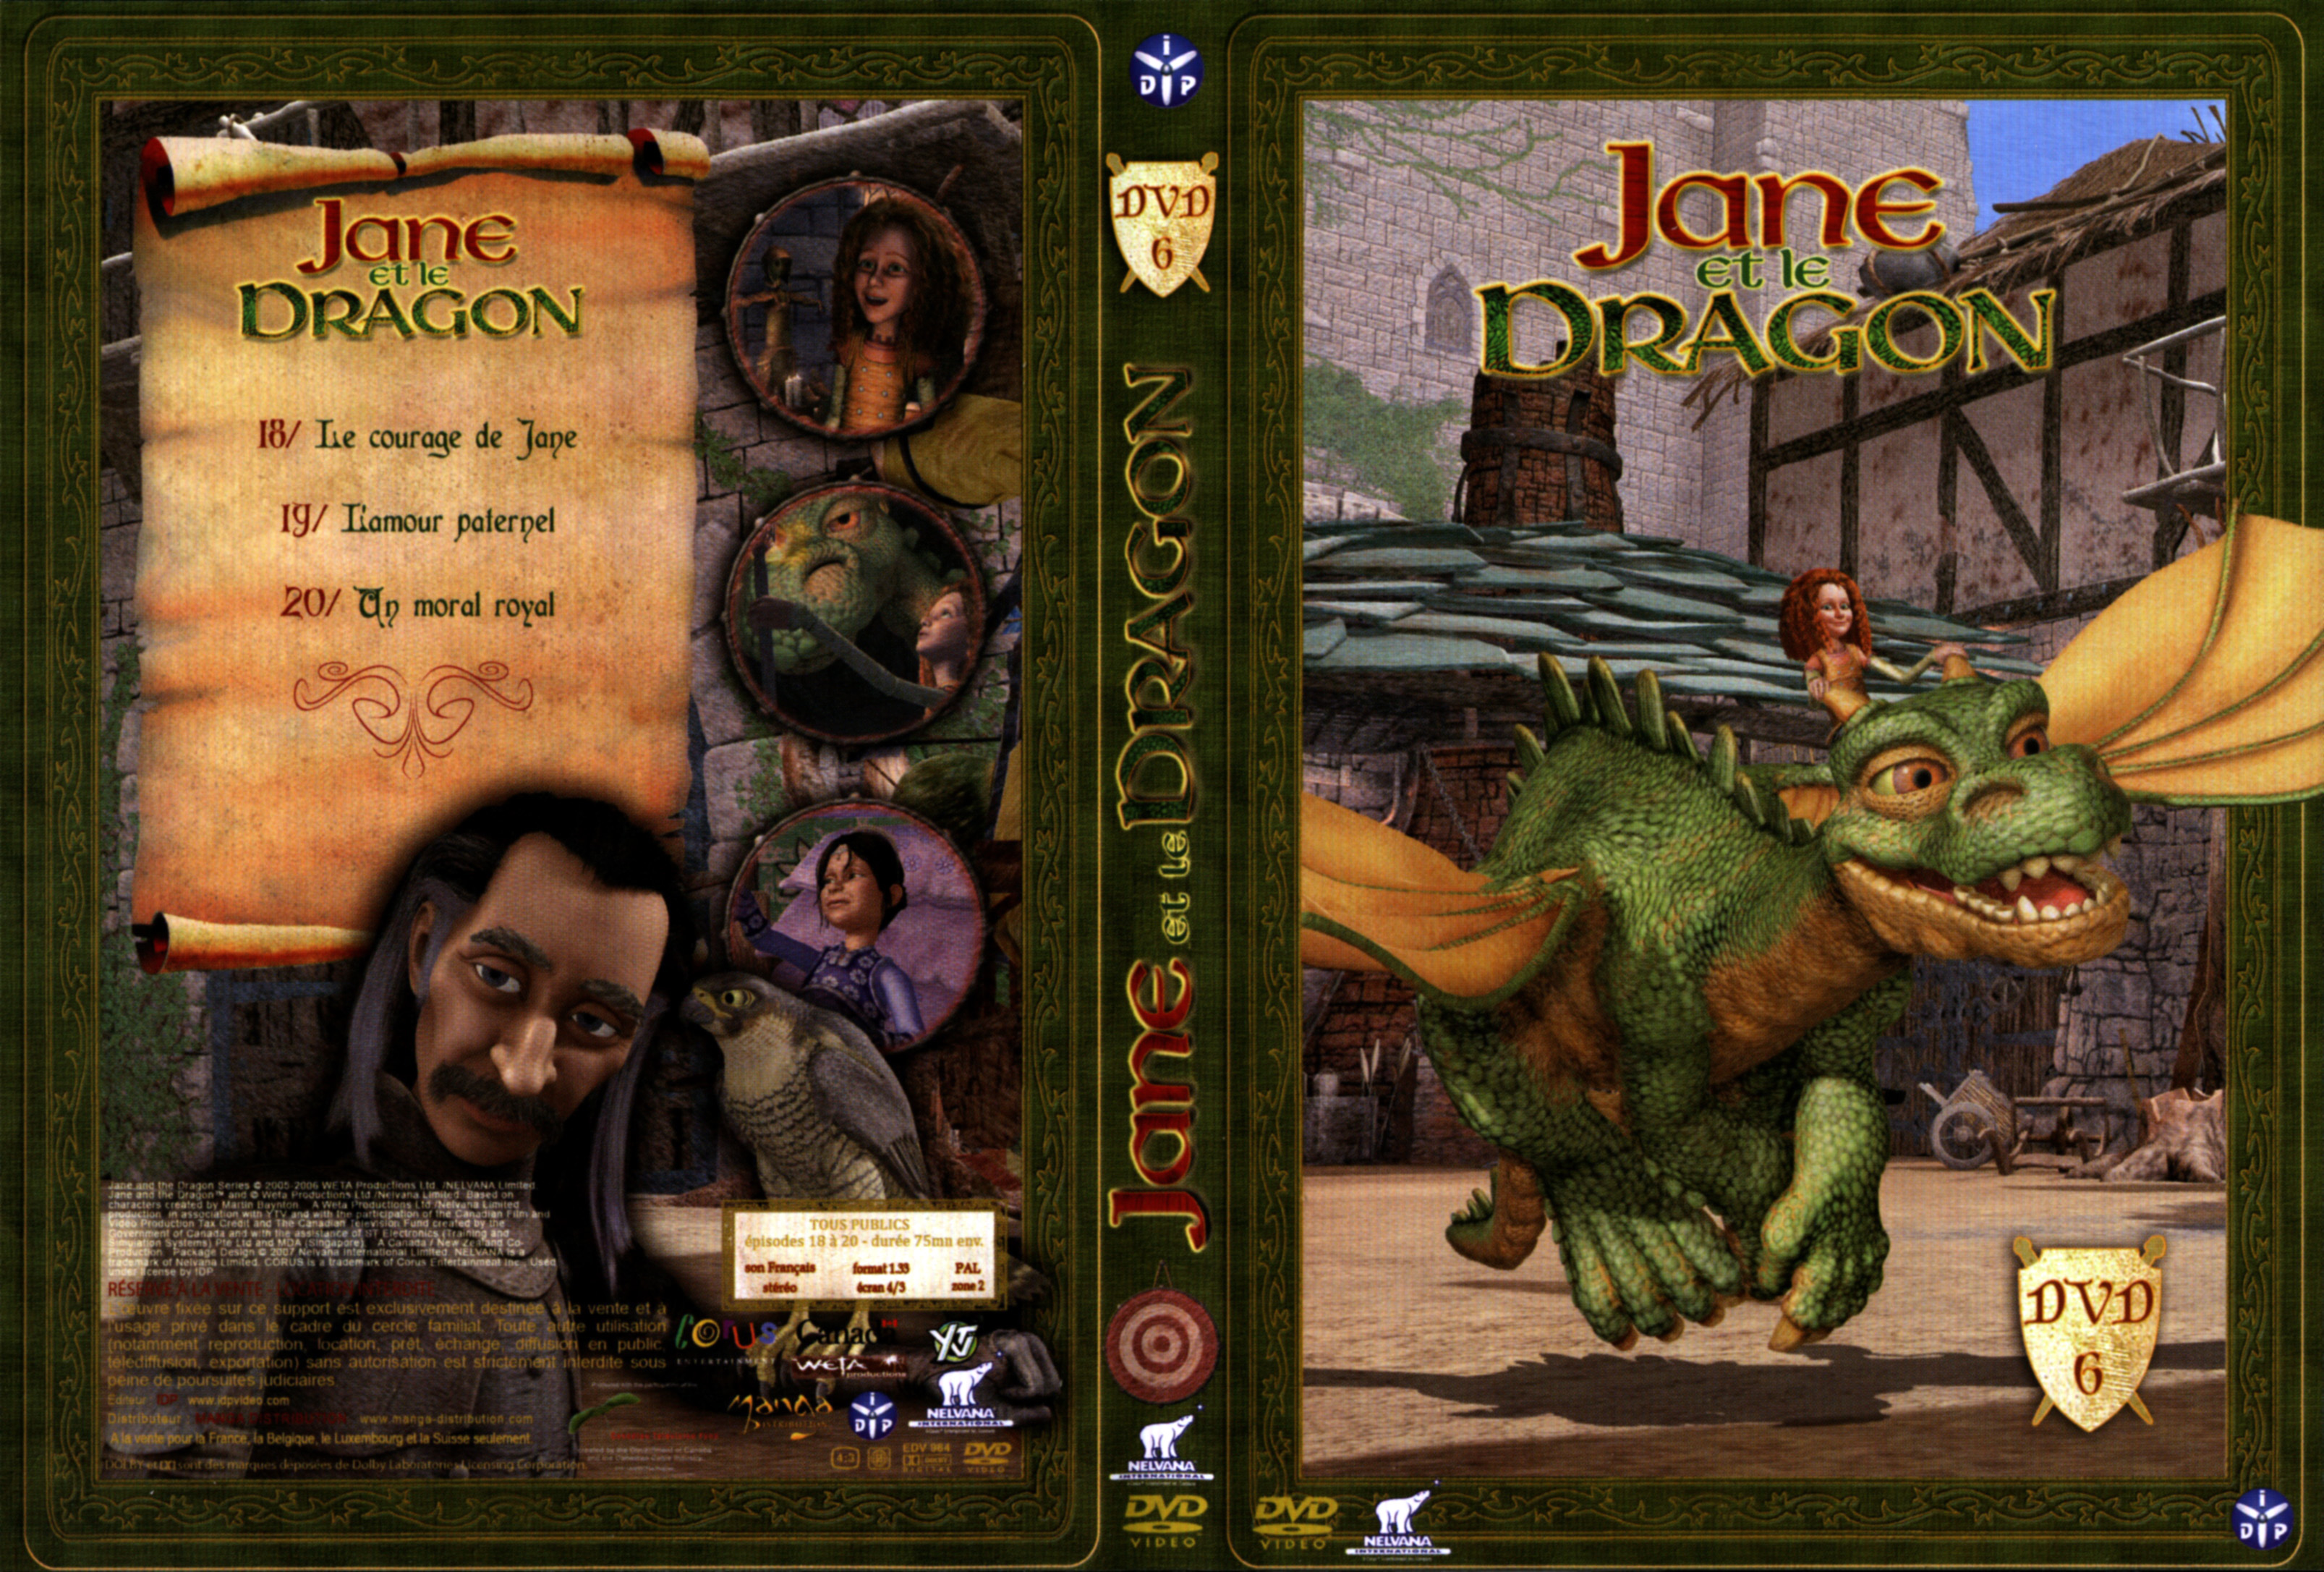 Jaquette DVD Jane et le Dragon vol 6